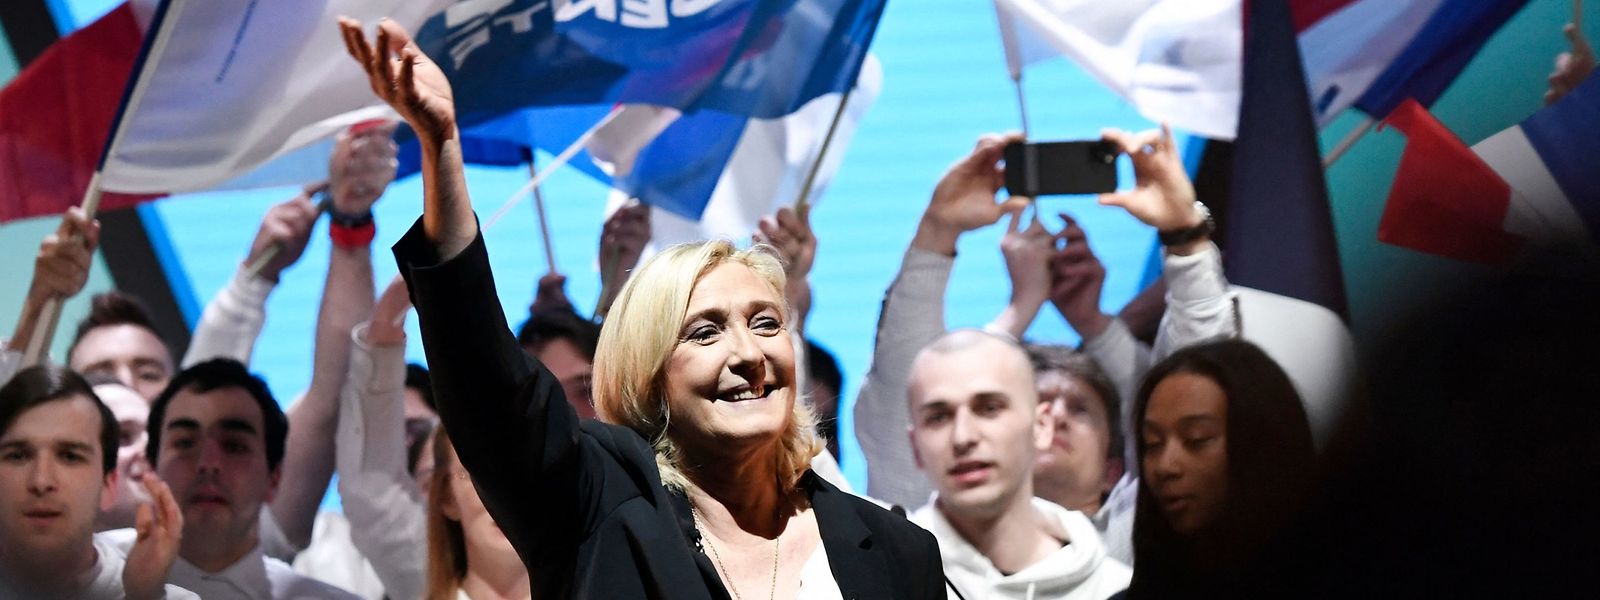 Pour la troisième fois, Marine Le Pen veut devenir présidente de la France cette année.